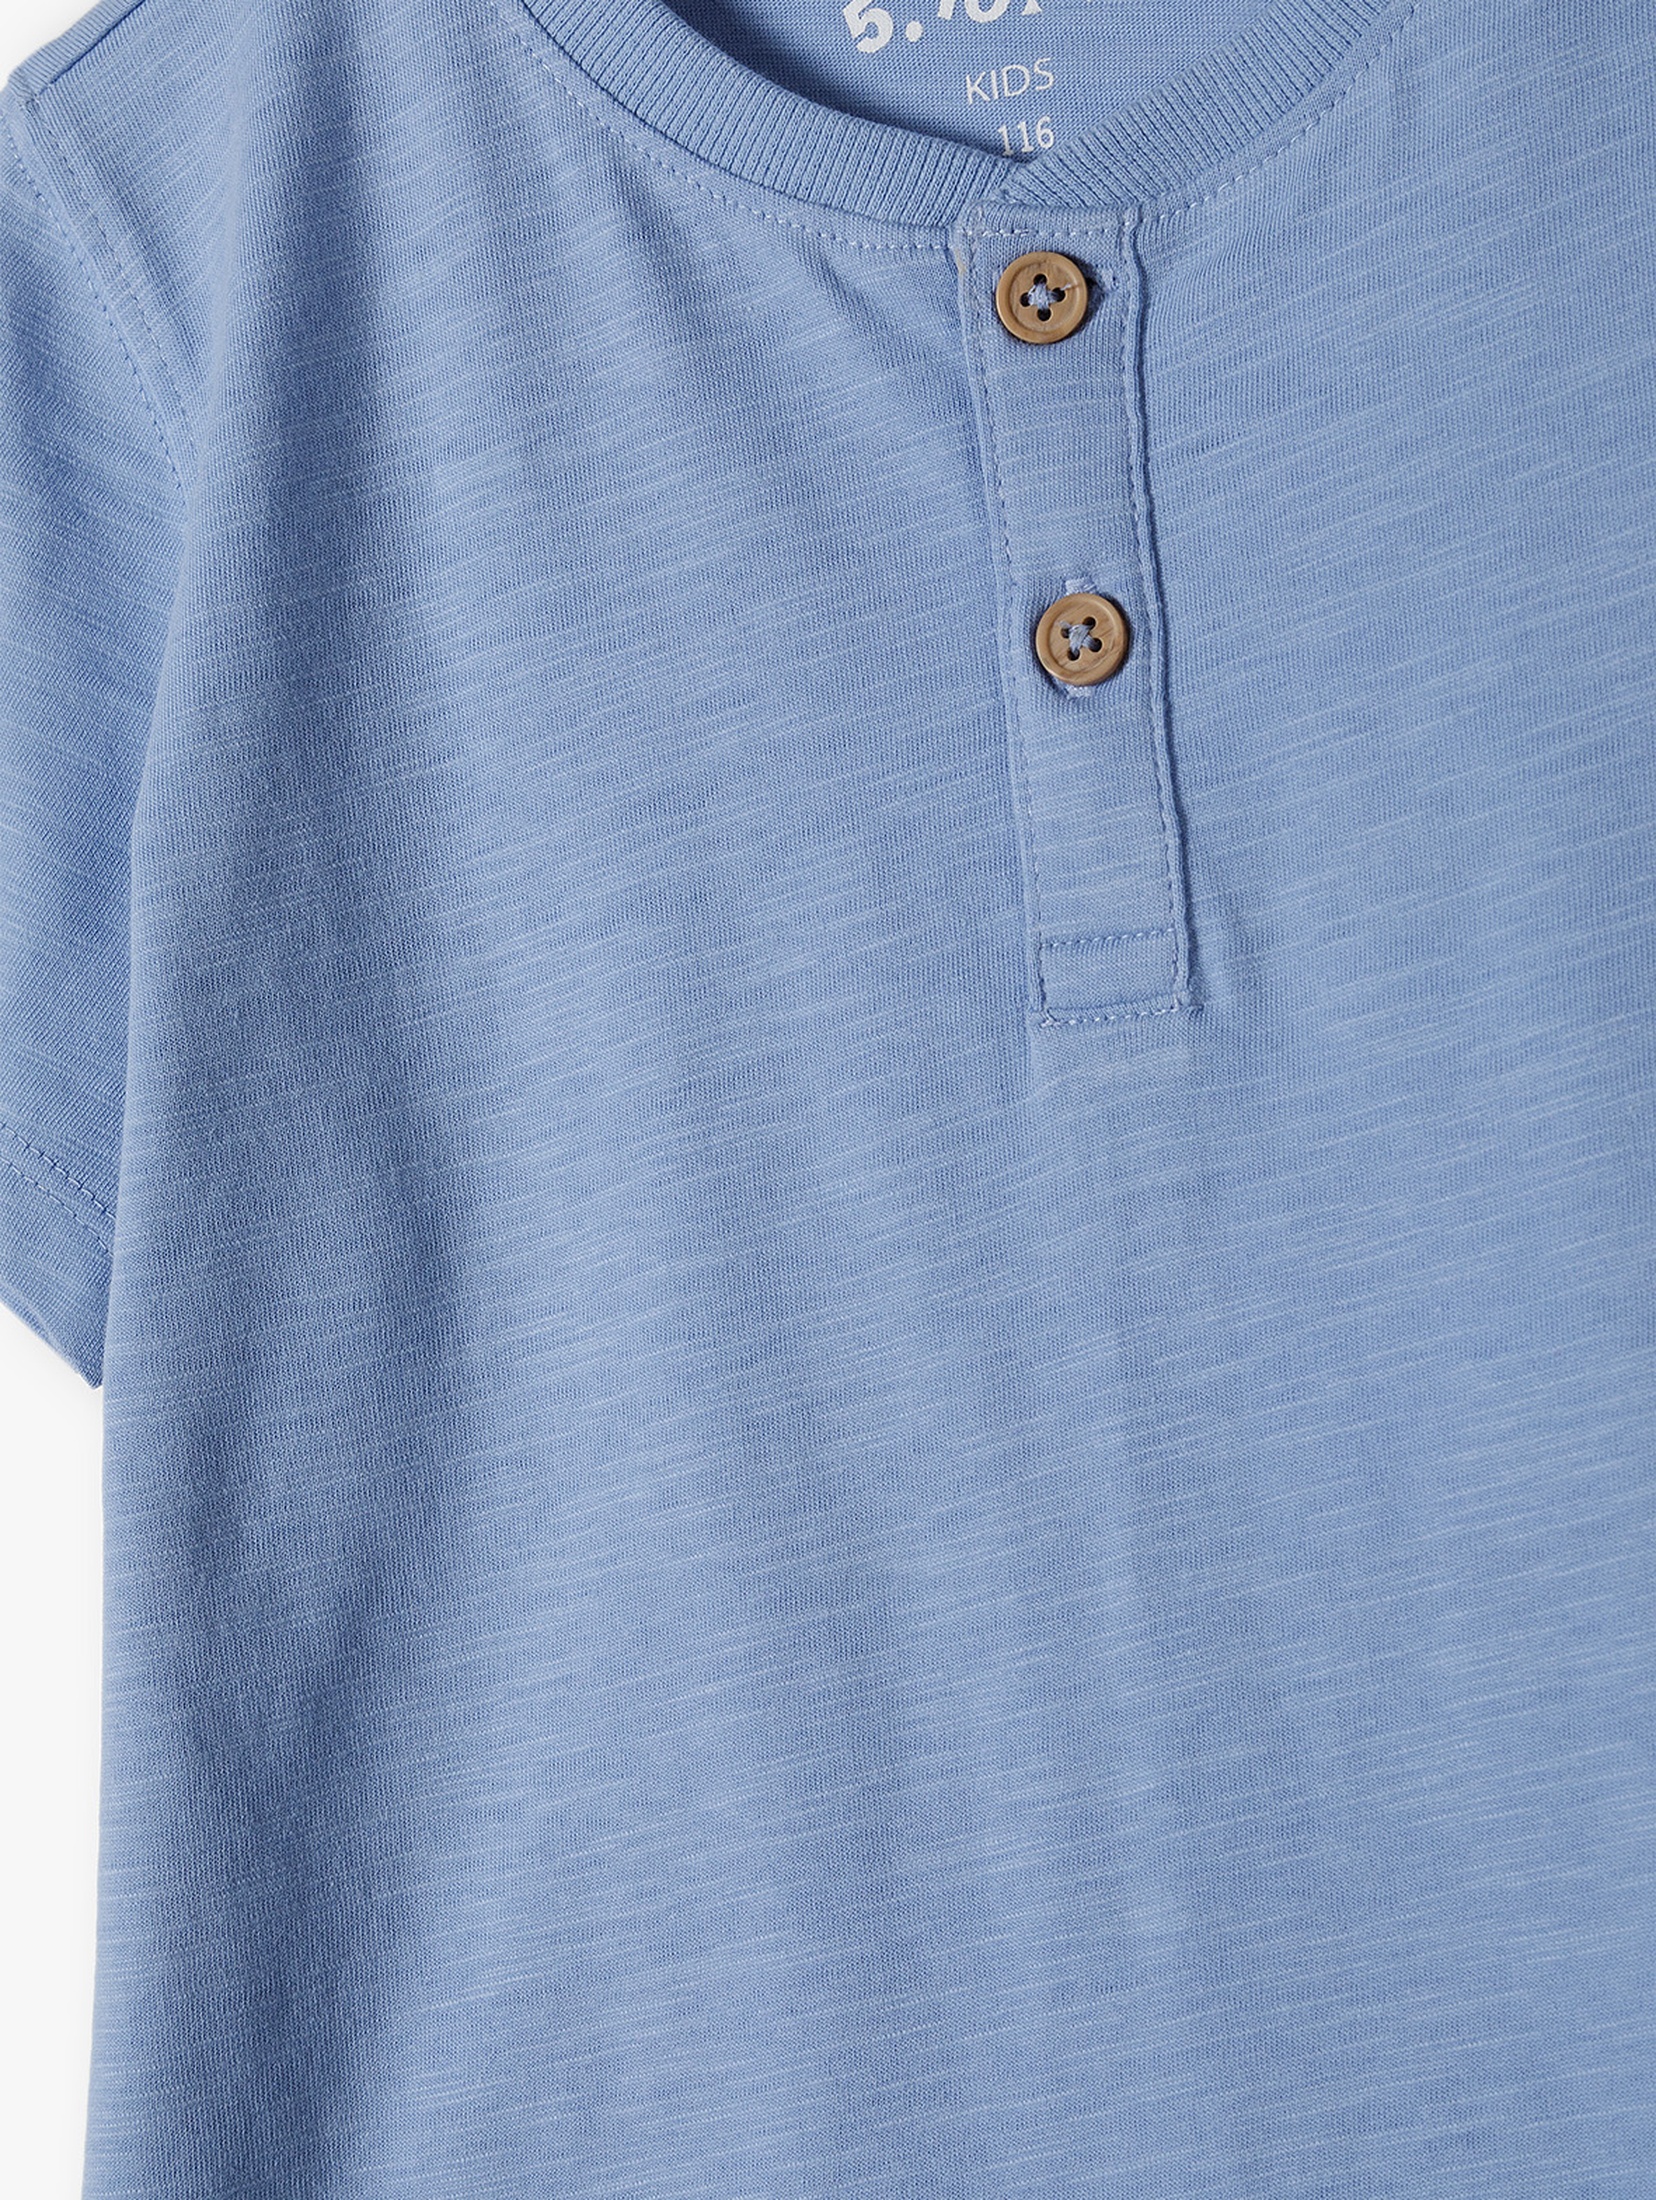 Niebieski t-shirt z brązowymi guzikami - 5.10.15.